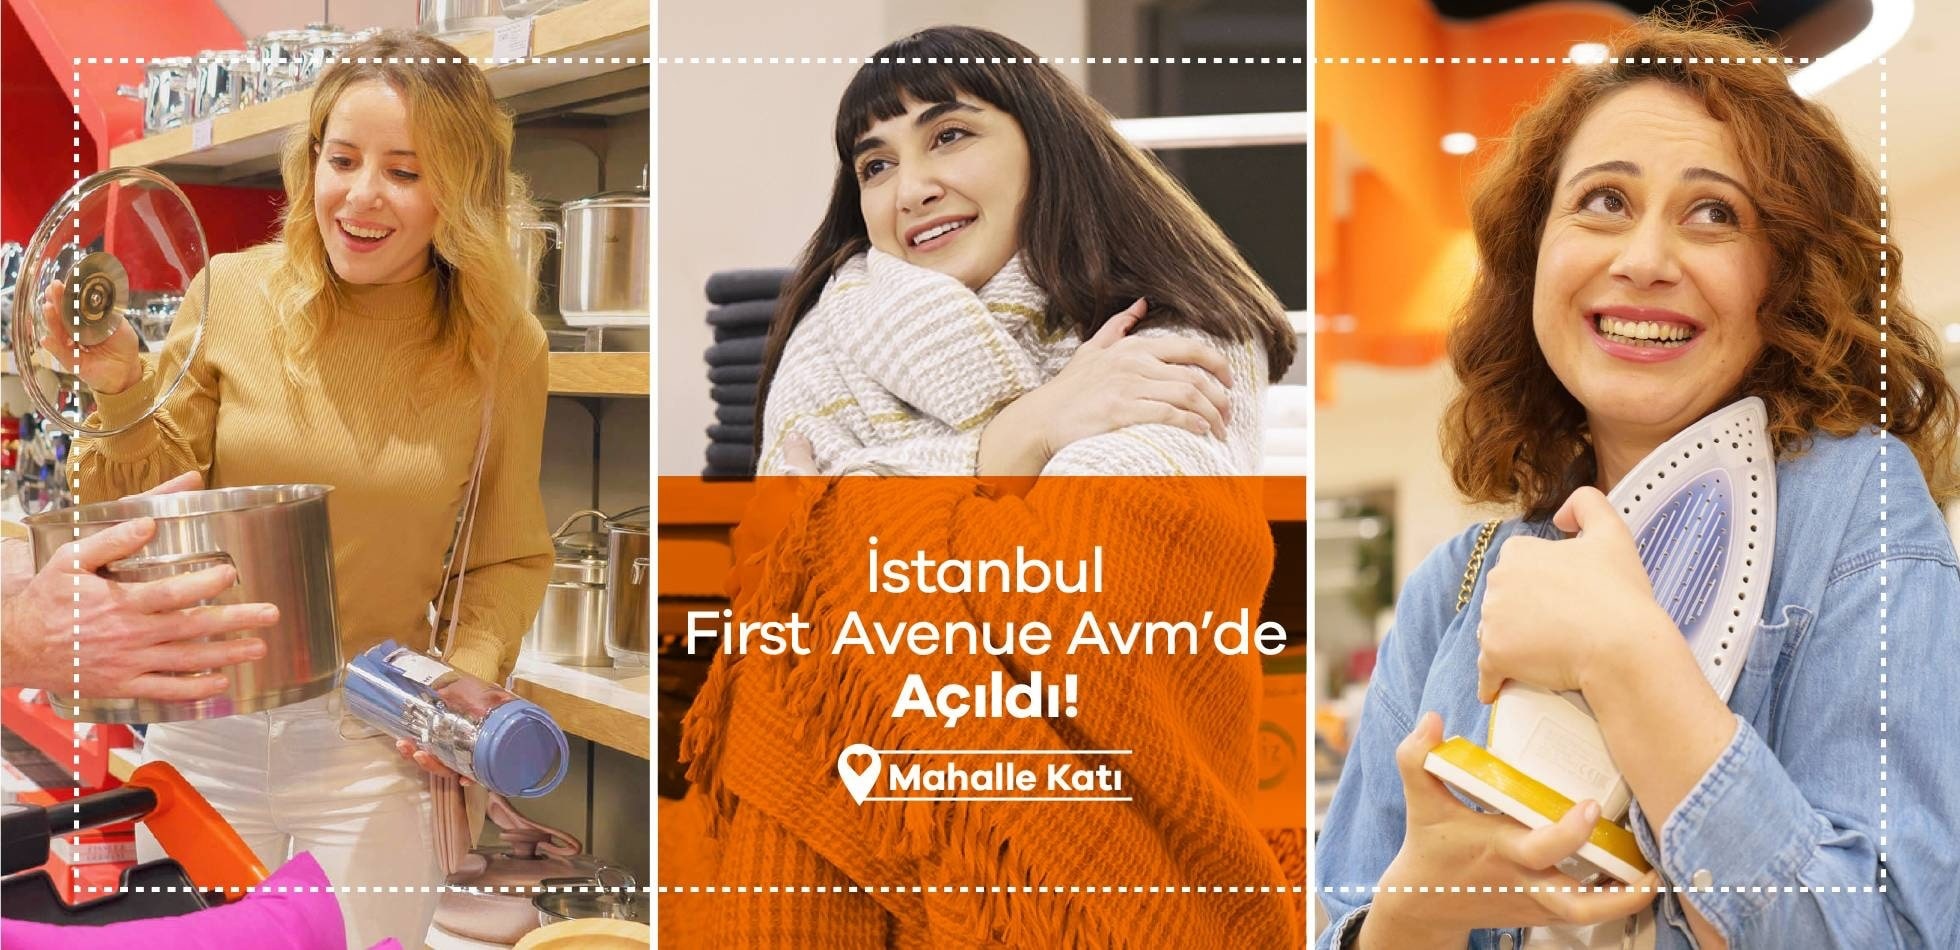 Evidea, First Avenue İstanbul AVM'de sizi bekliyor!